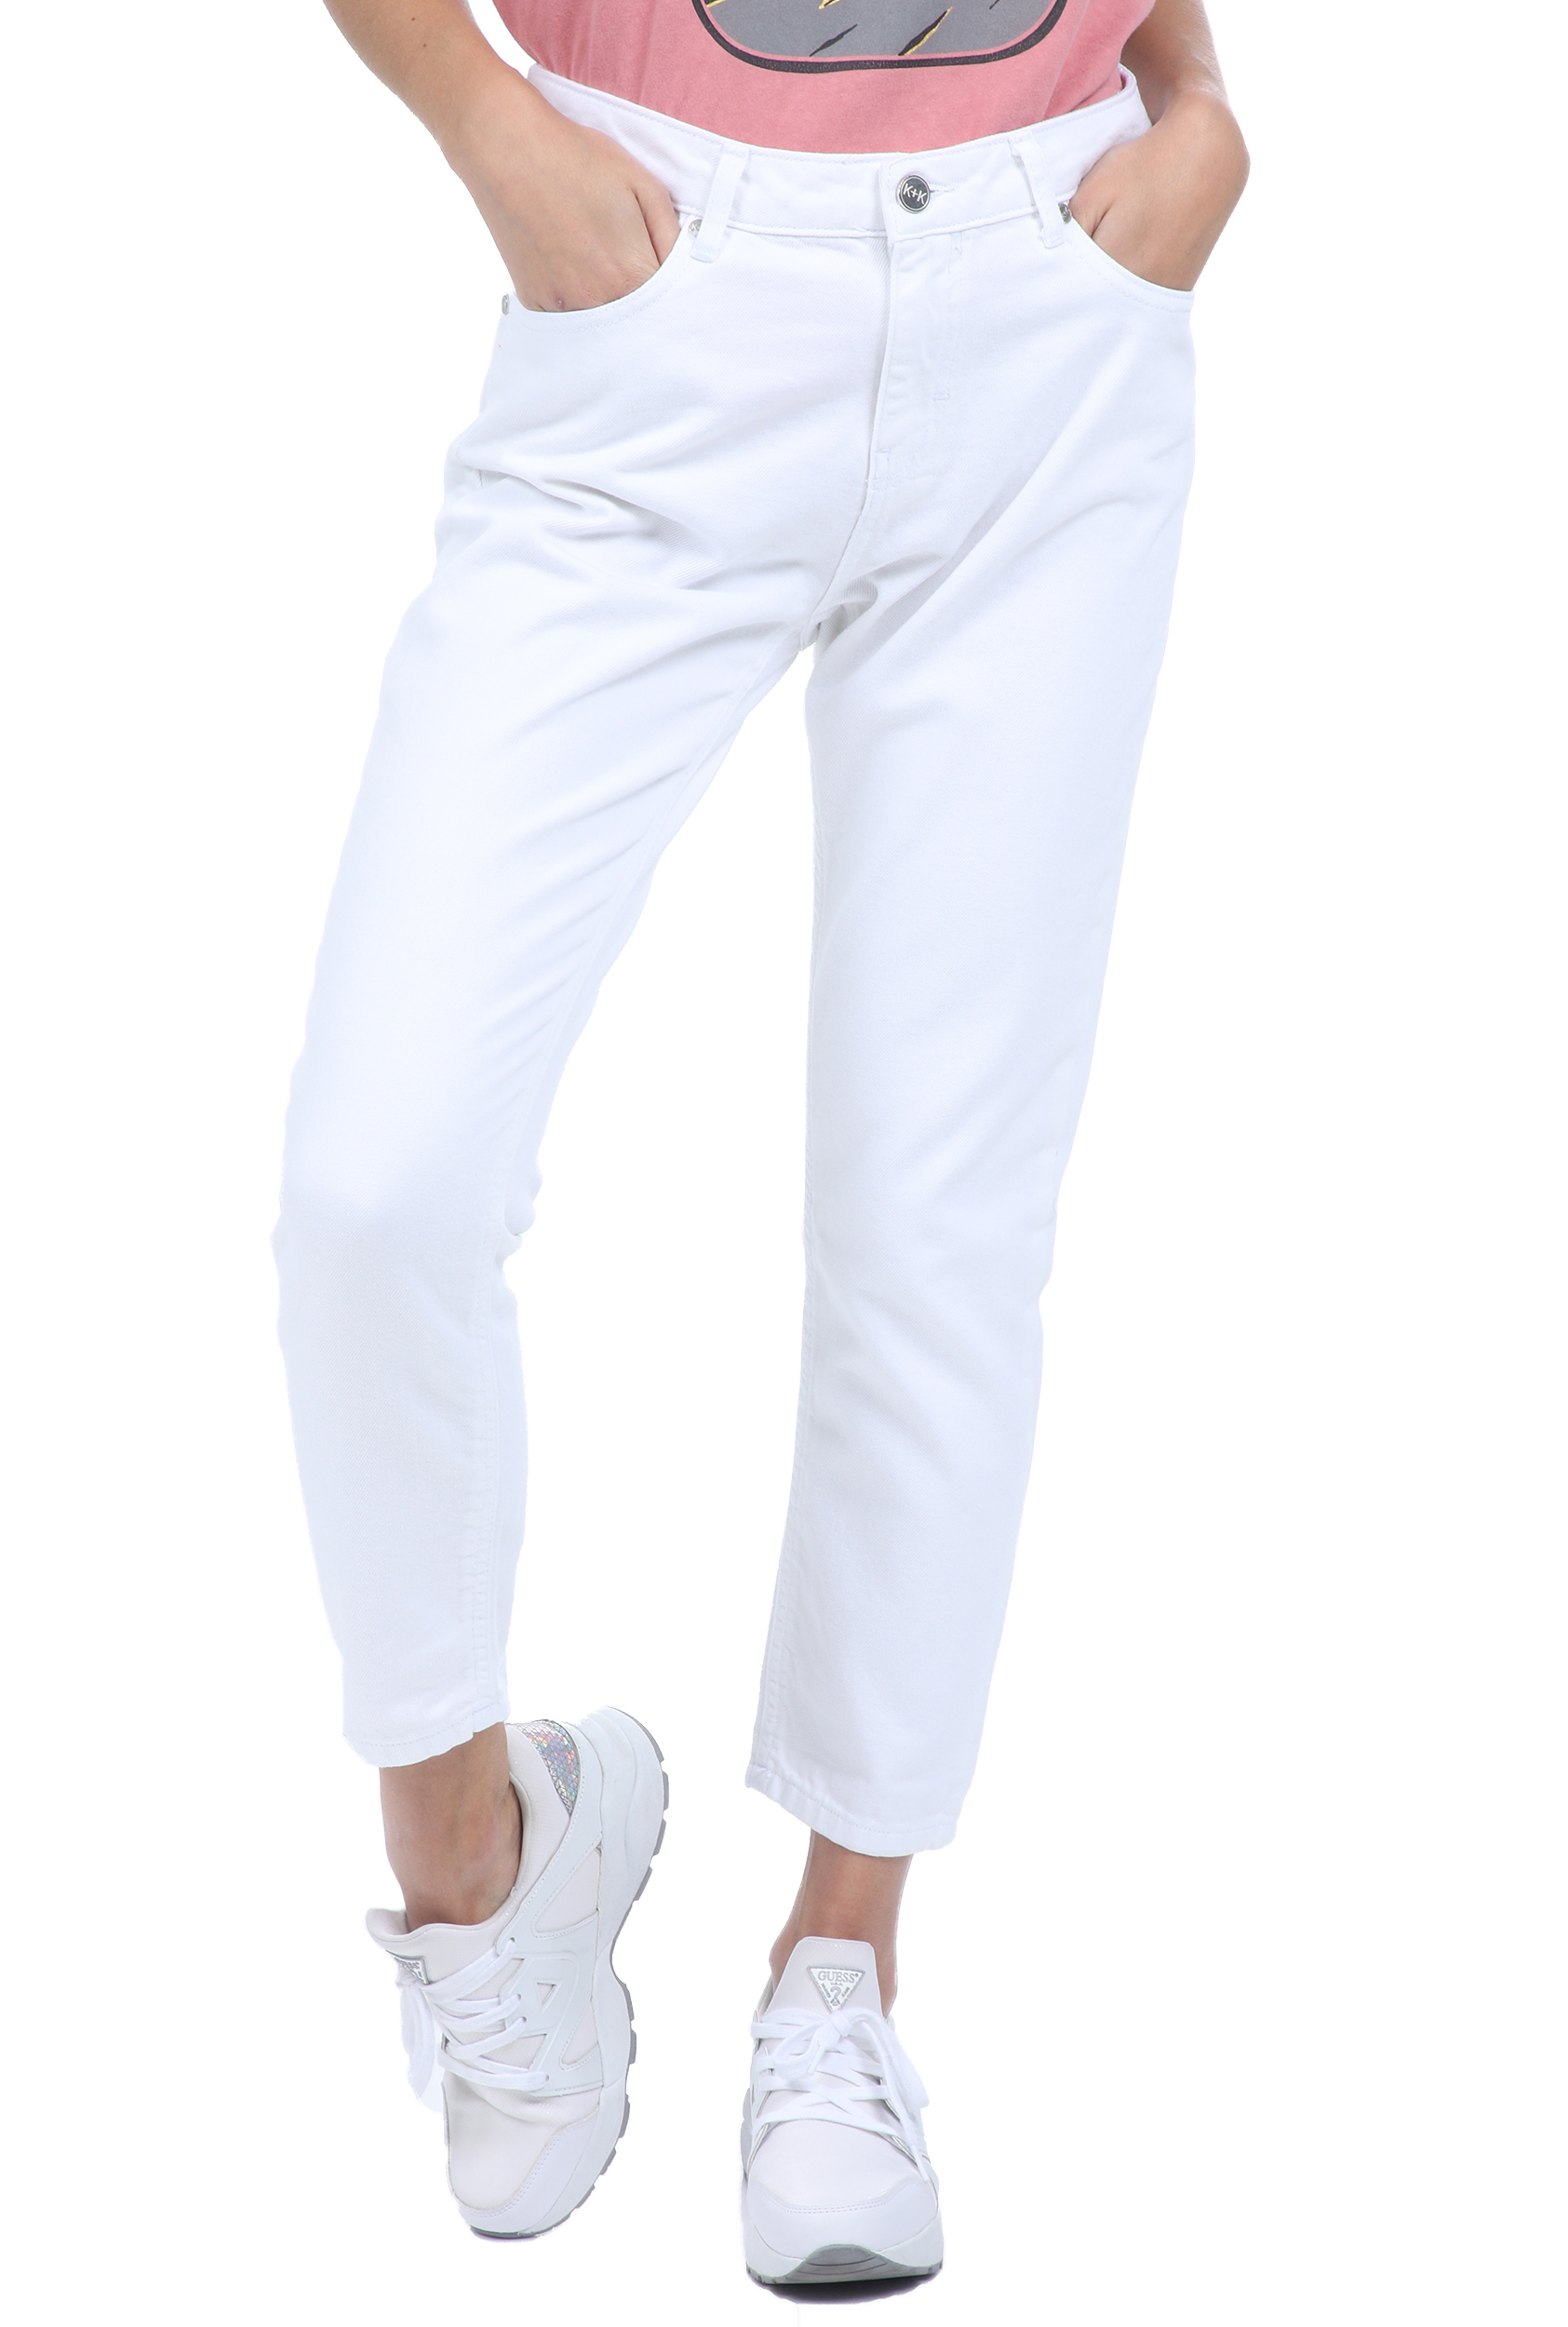 KENDALL + KYLIE – Γυναικείο jean παντελόνι KENDALL + KYLIE λευκό 1811136.0-9113